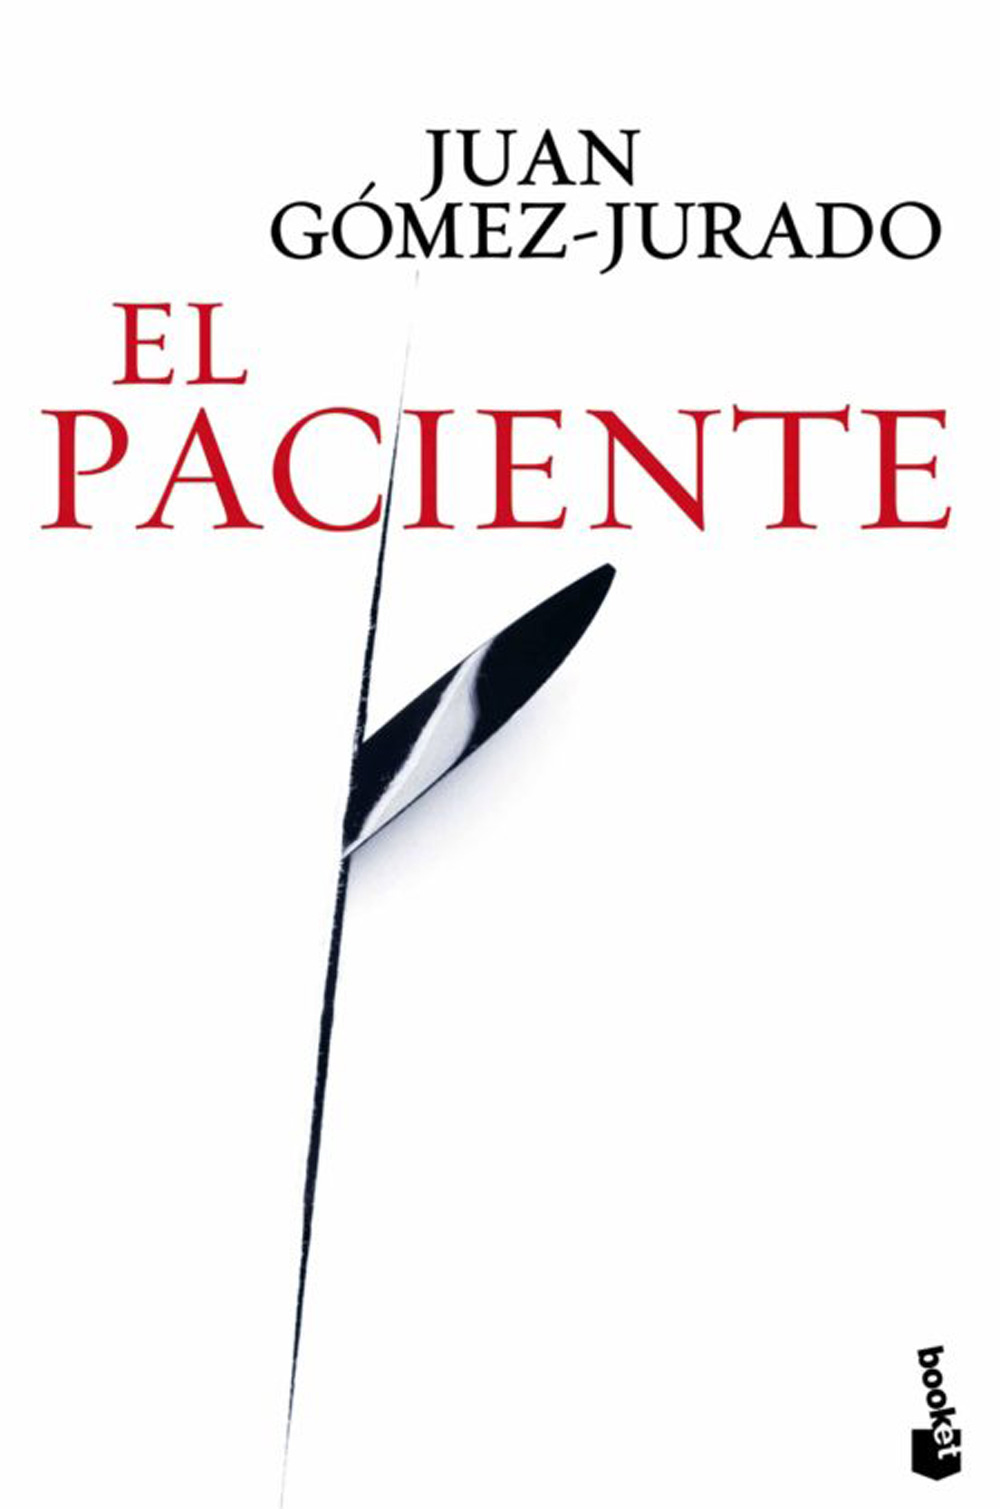 Bitácora de (mis) lecturas: Rey Blanco (Juan Gómez-Jurado)